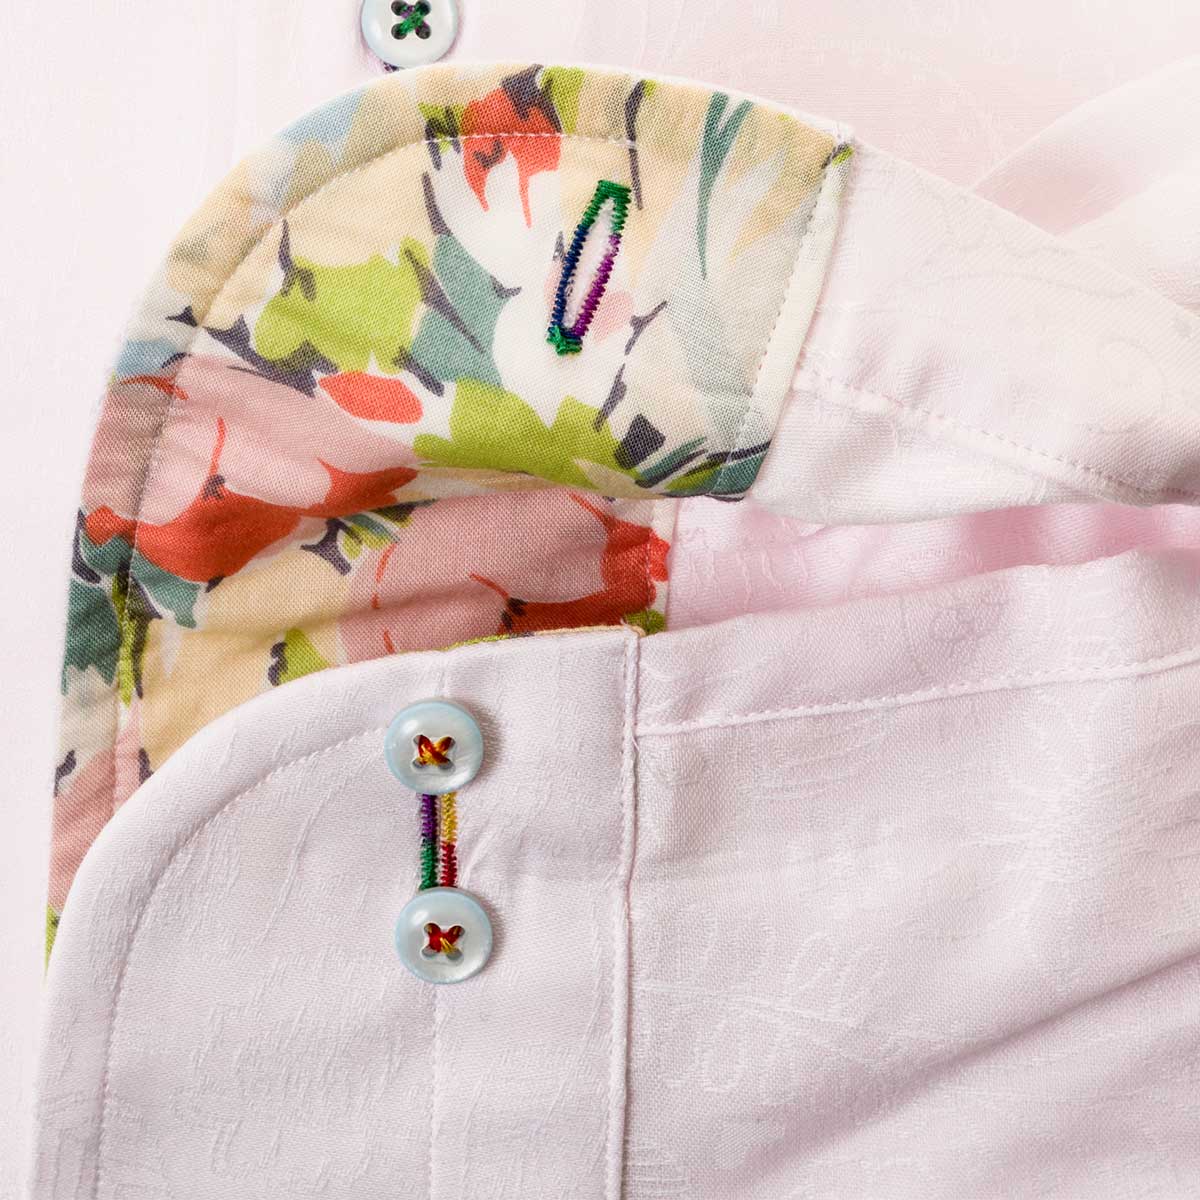 ワイシャツ スリムフィット 花柄 ピンク ジャカード LOUIS & CLERK